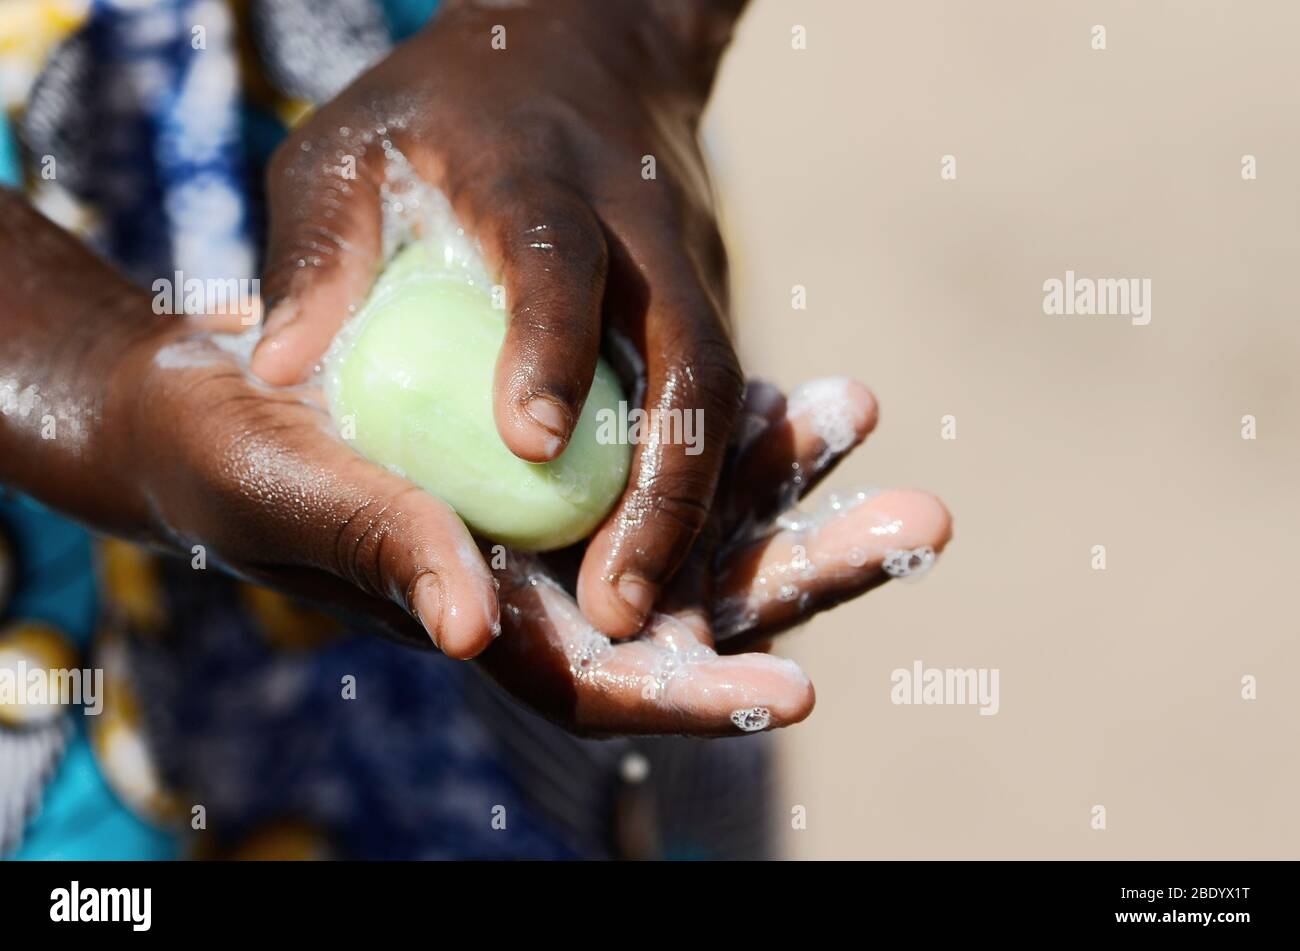 Mains noires africaines laver avec des charges de savon pour nettoyer et éviter la contamination et la propagation de virus ou de bactéries Banque D'Images